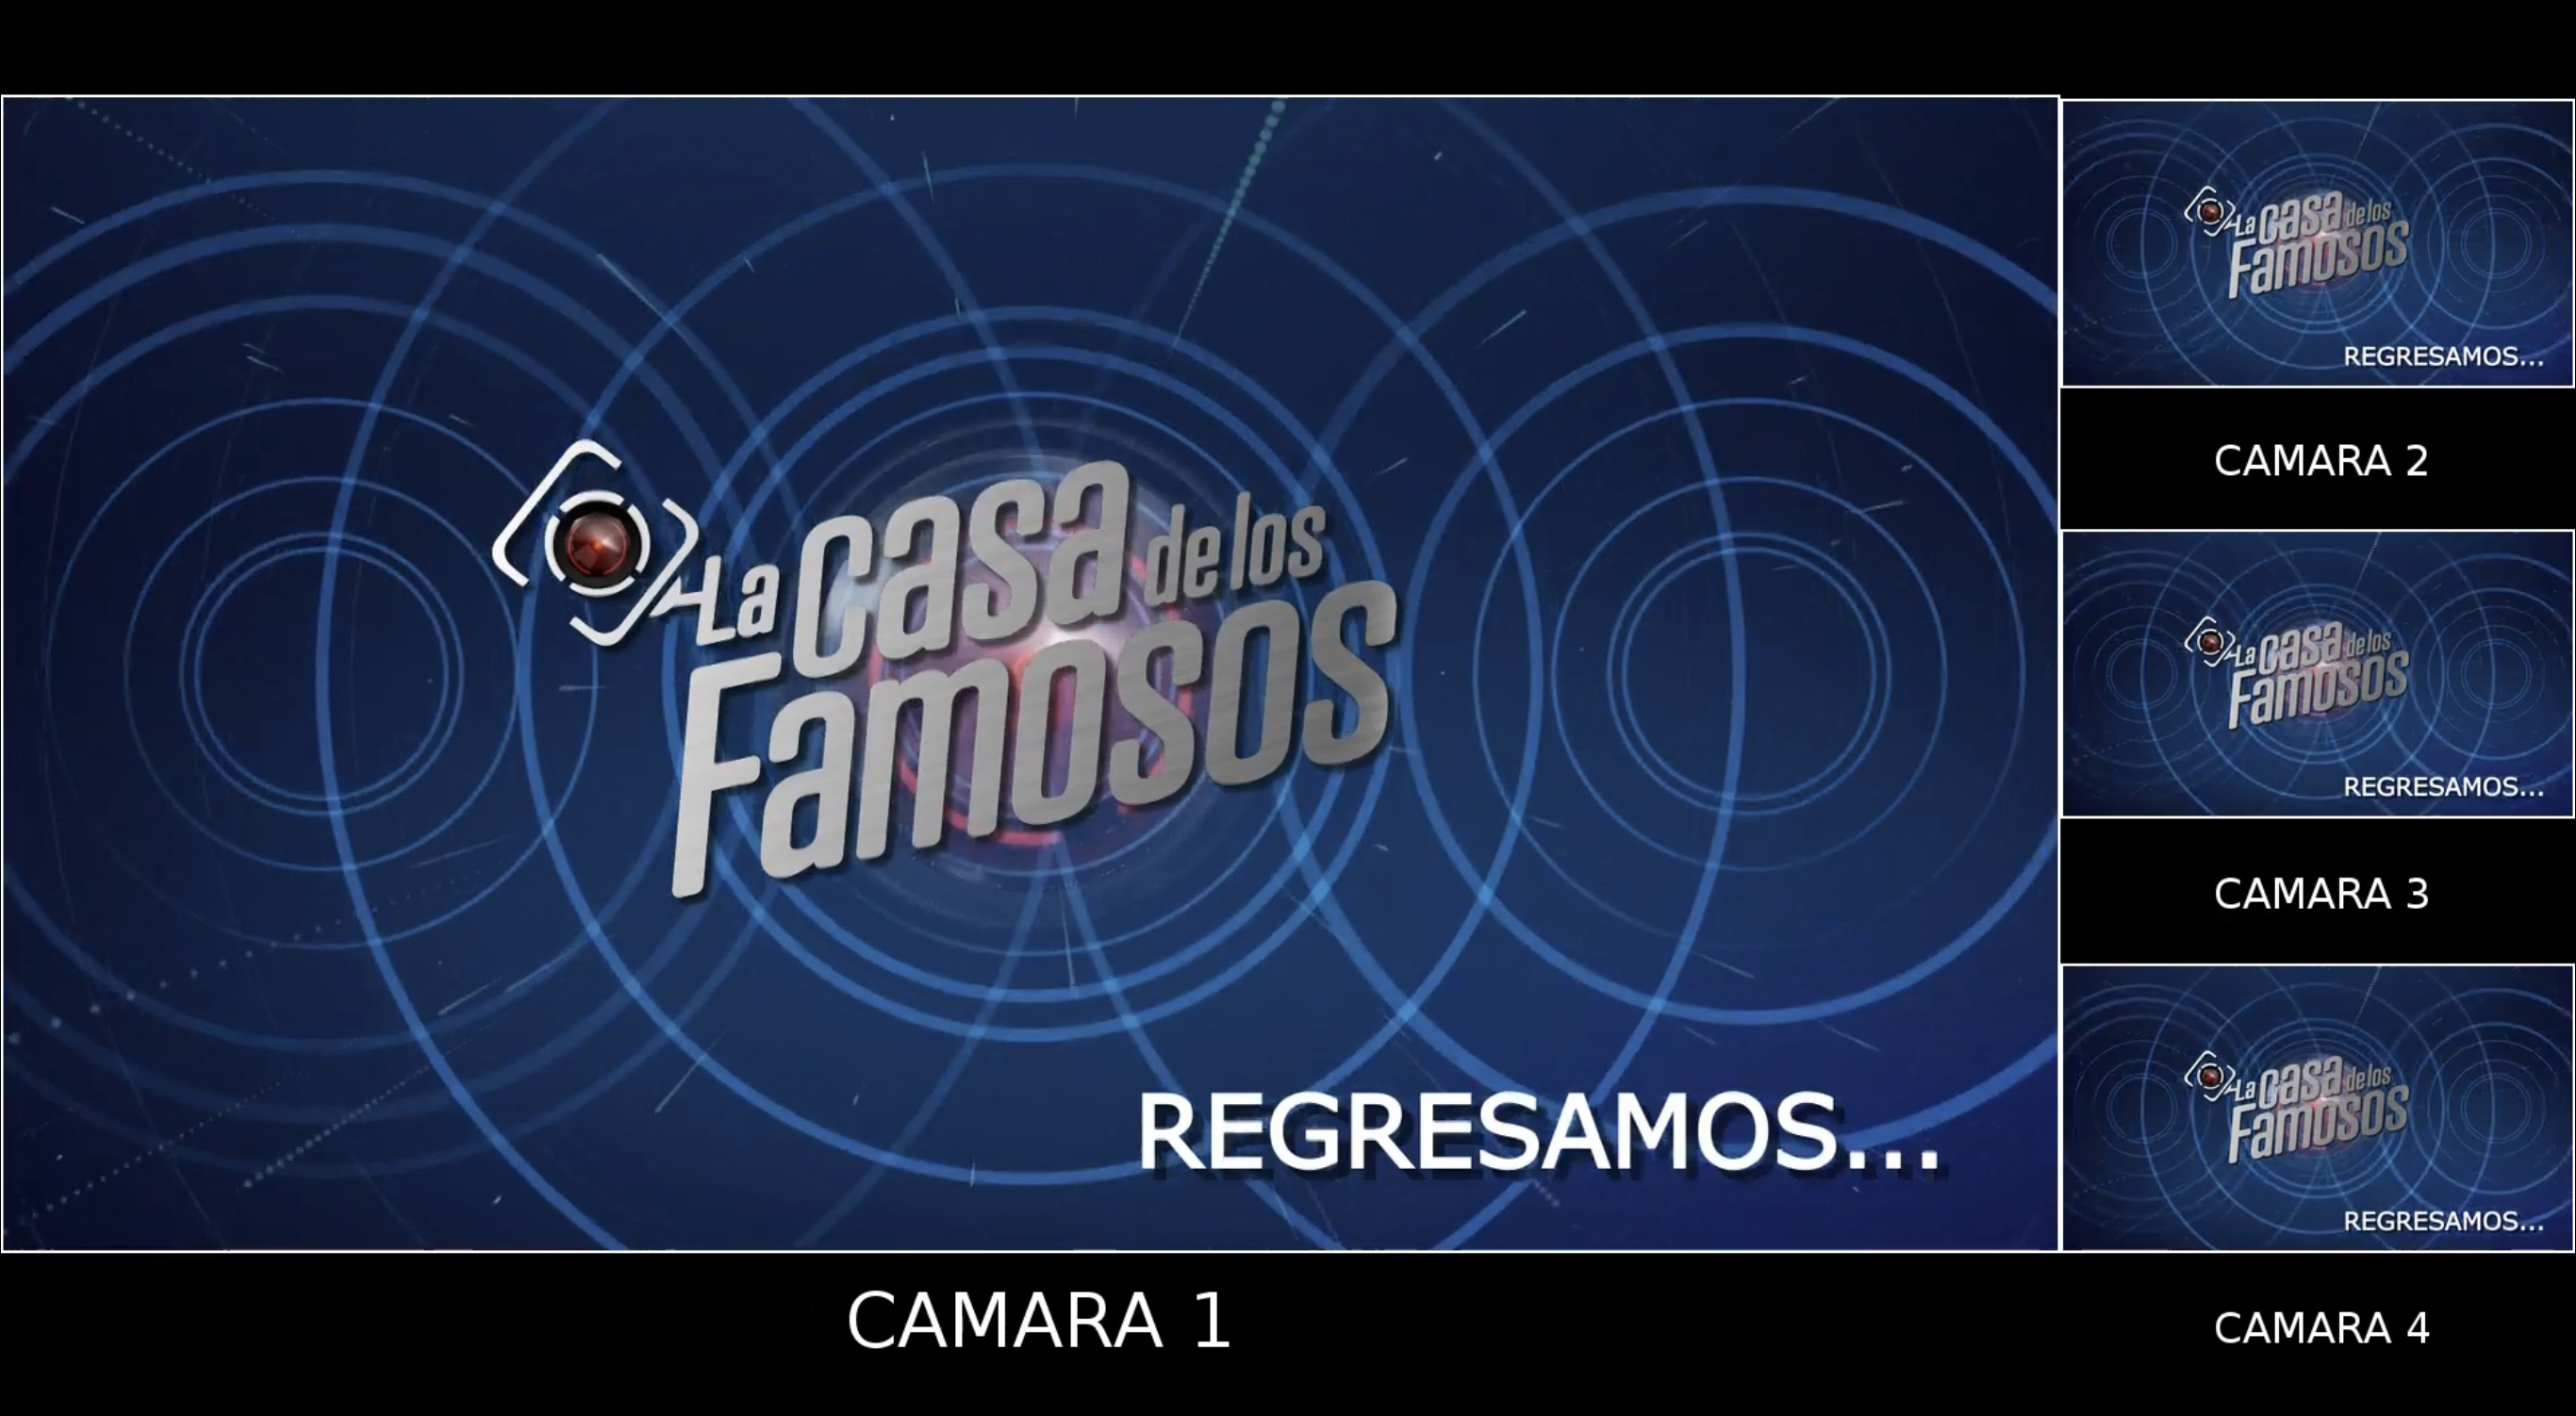 Mensaje en el live stream de 'La Casa de los Famosos'.